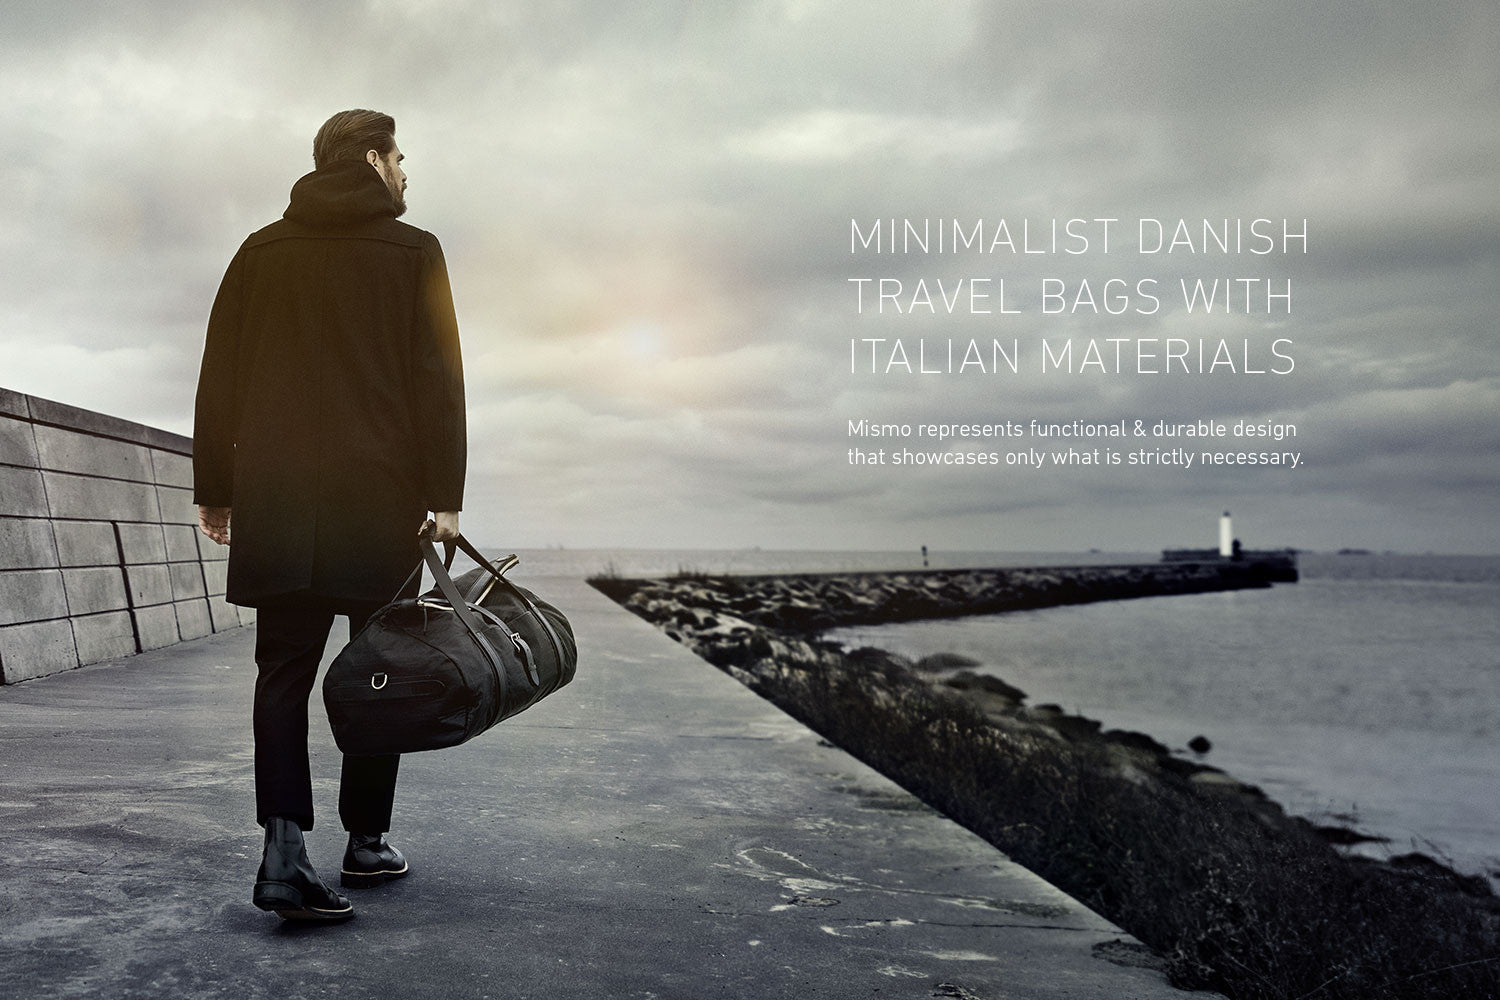 Danish travel bags